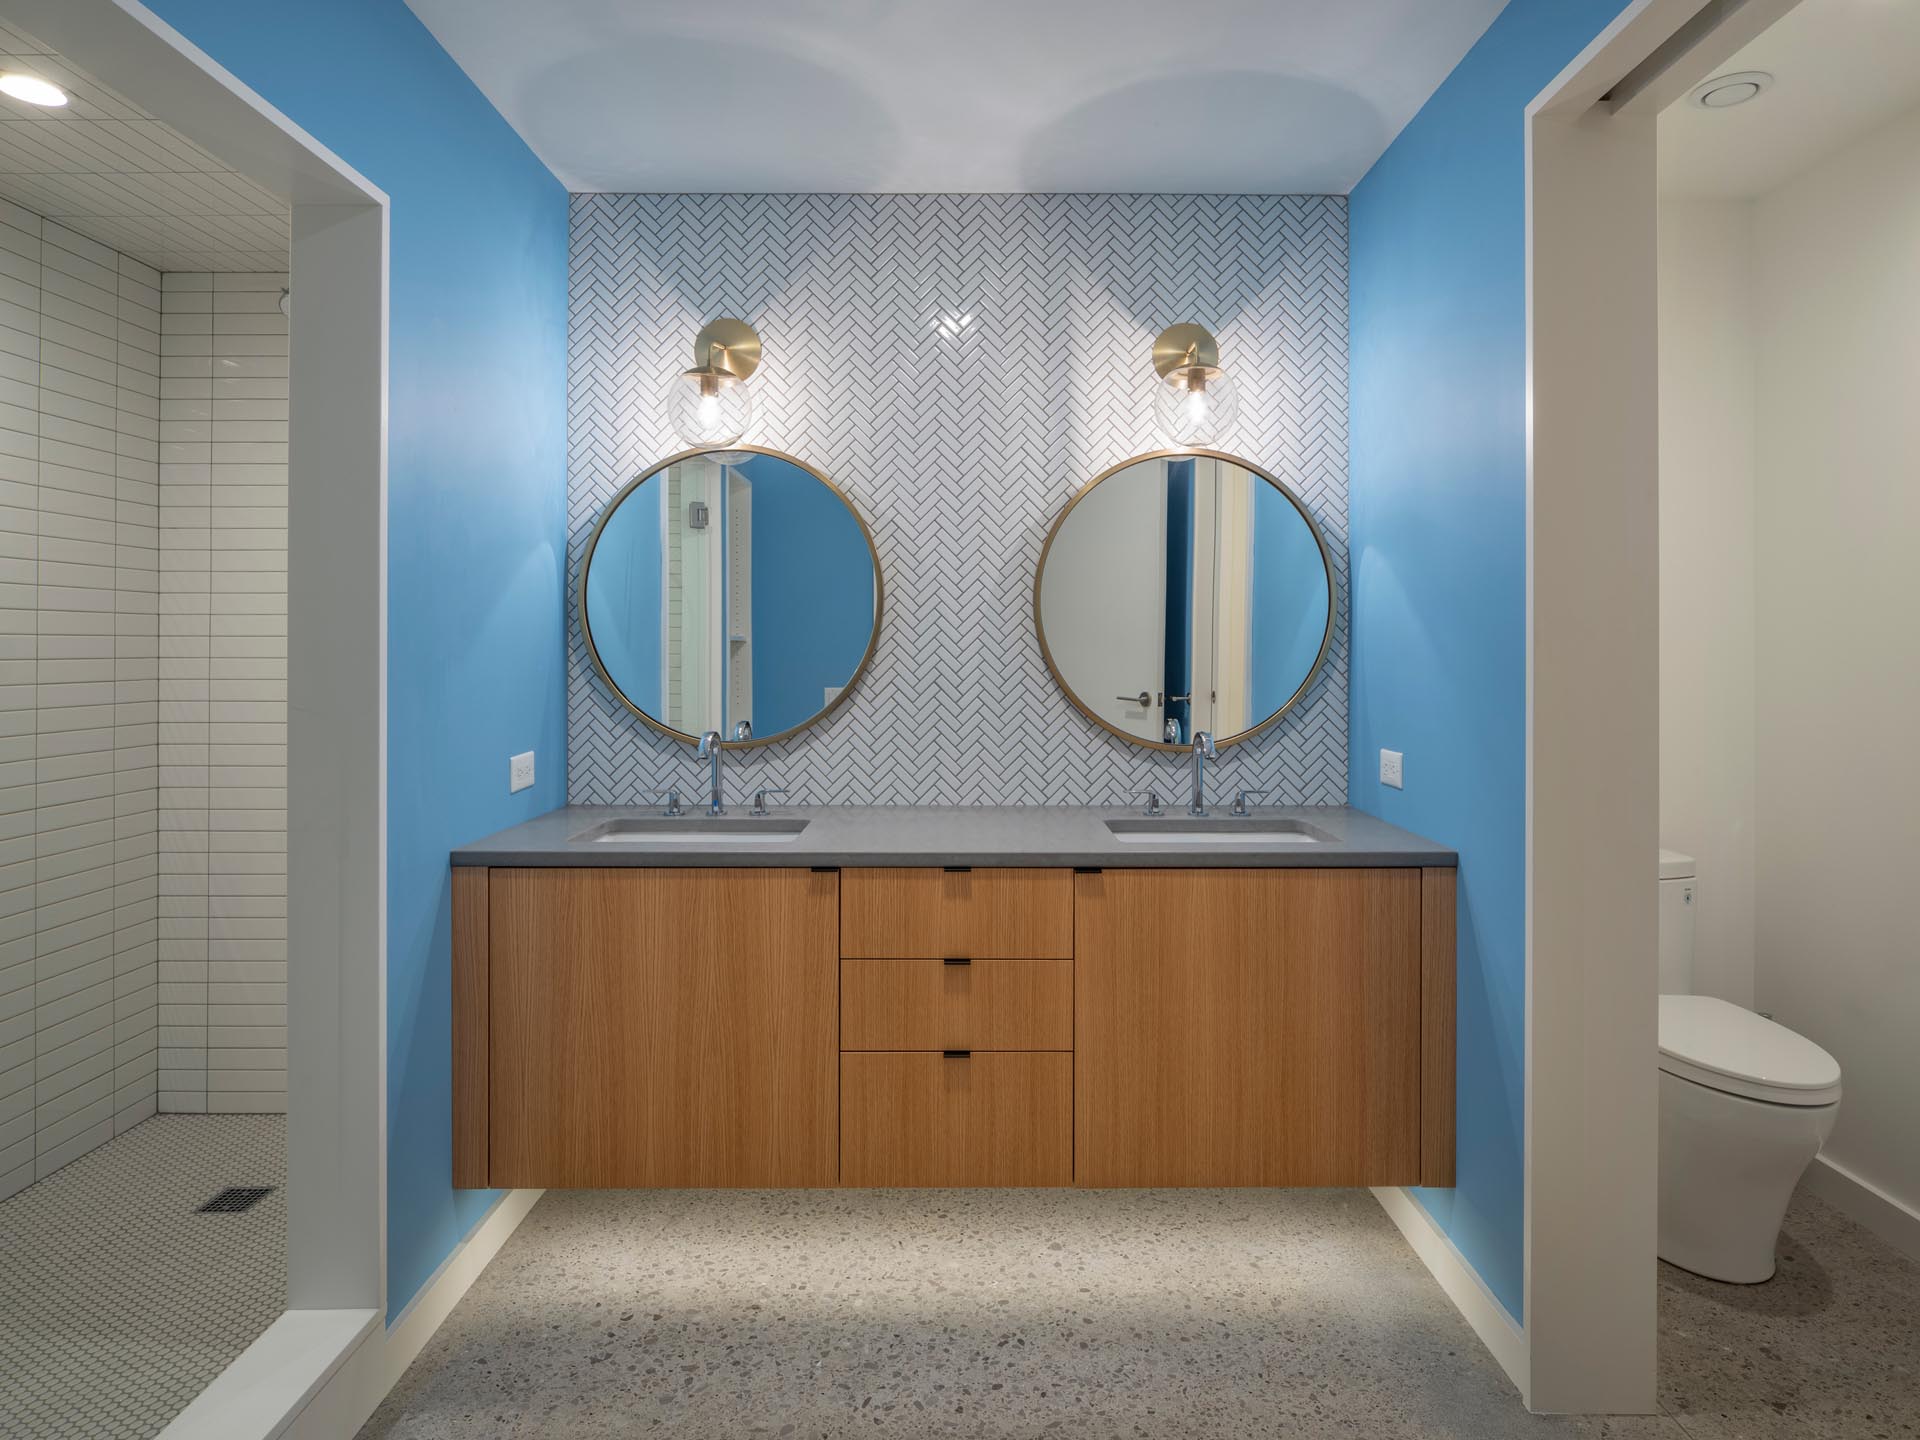 Современная ванная комната с ярко-синими стенами, которые добавляют яркости, белый - парящий деревянный туалетный столик с подсветкой под ним, а наверху - два круглых зеркала с бронзовыми рамами, которые сочетаются с бра.